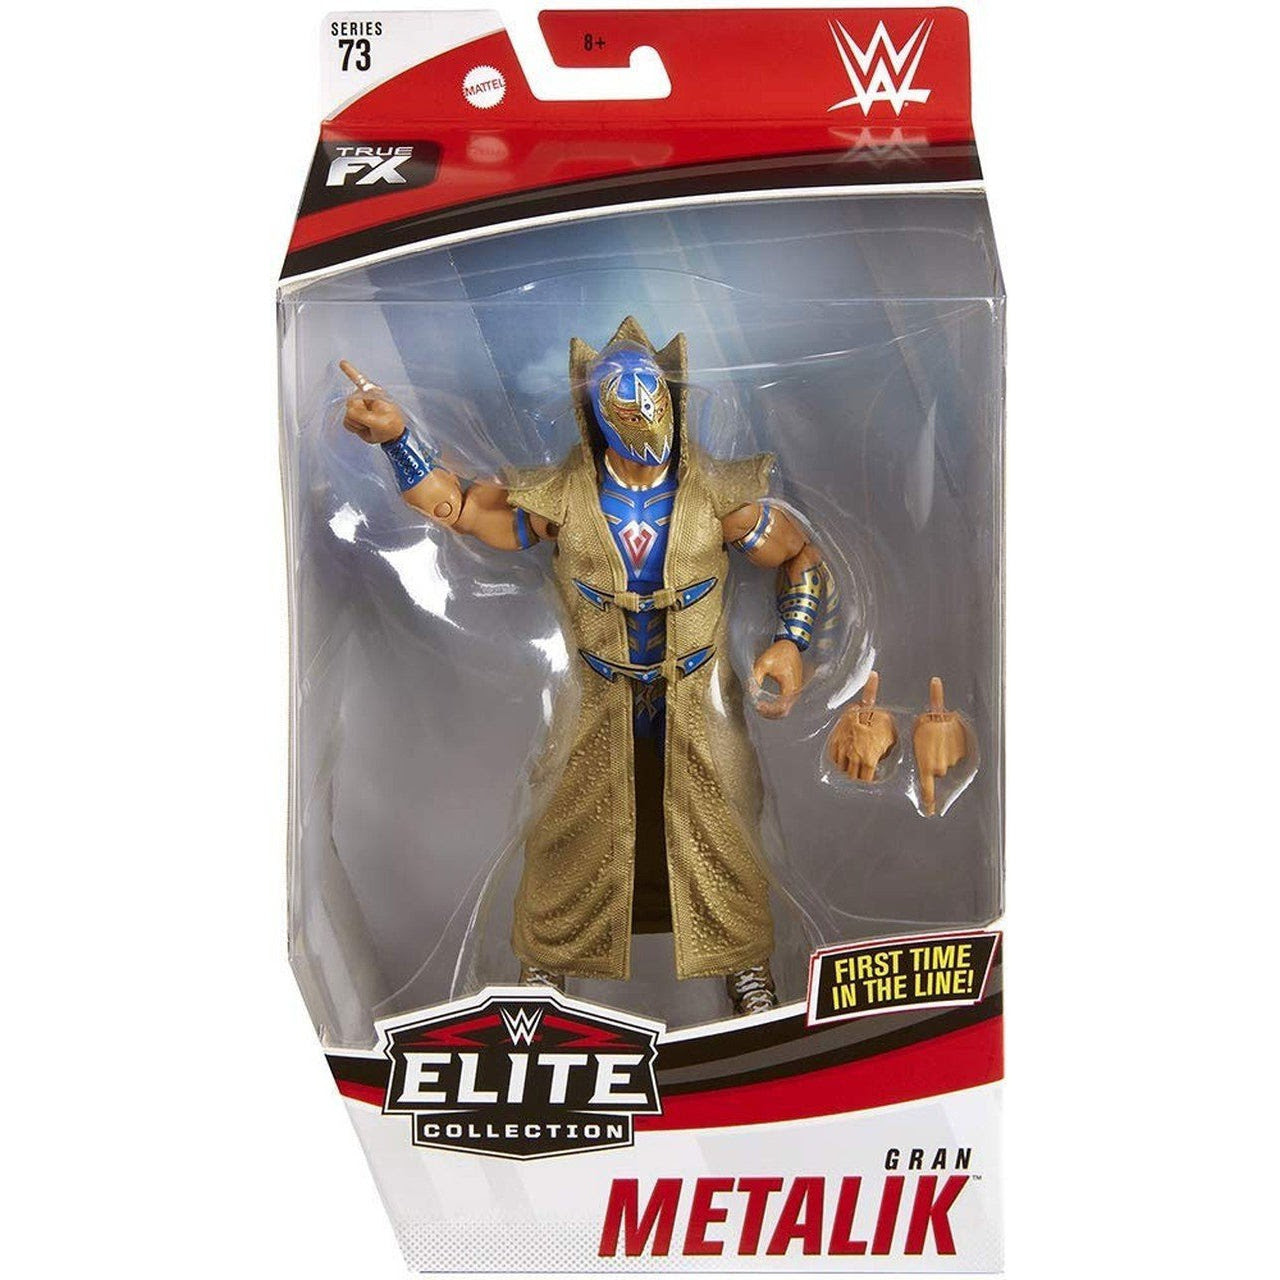 Image of WWE Elite Collection Series 73 - Gran Metalik